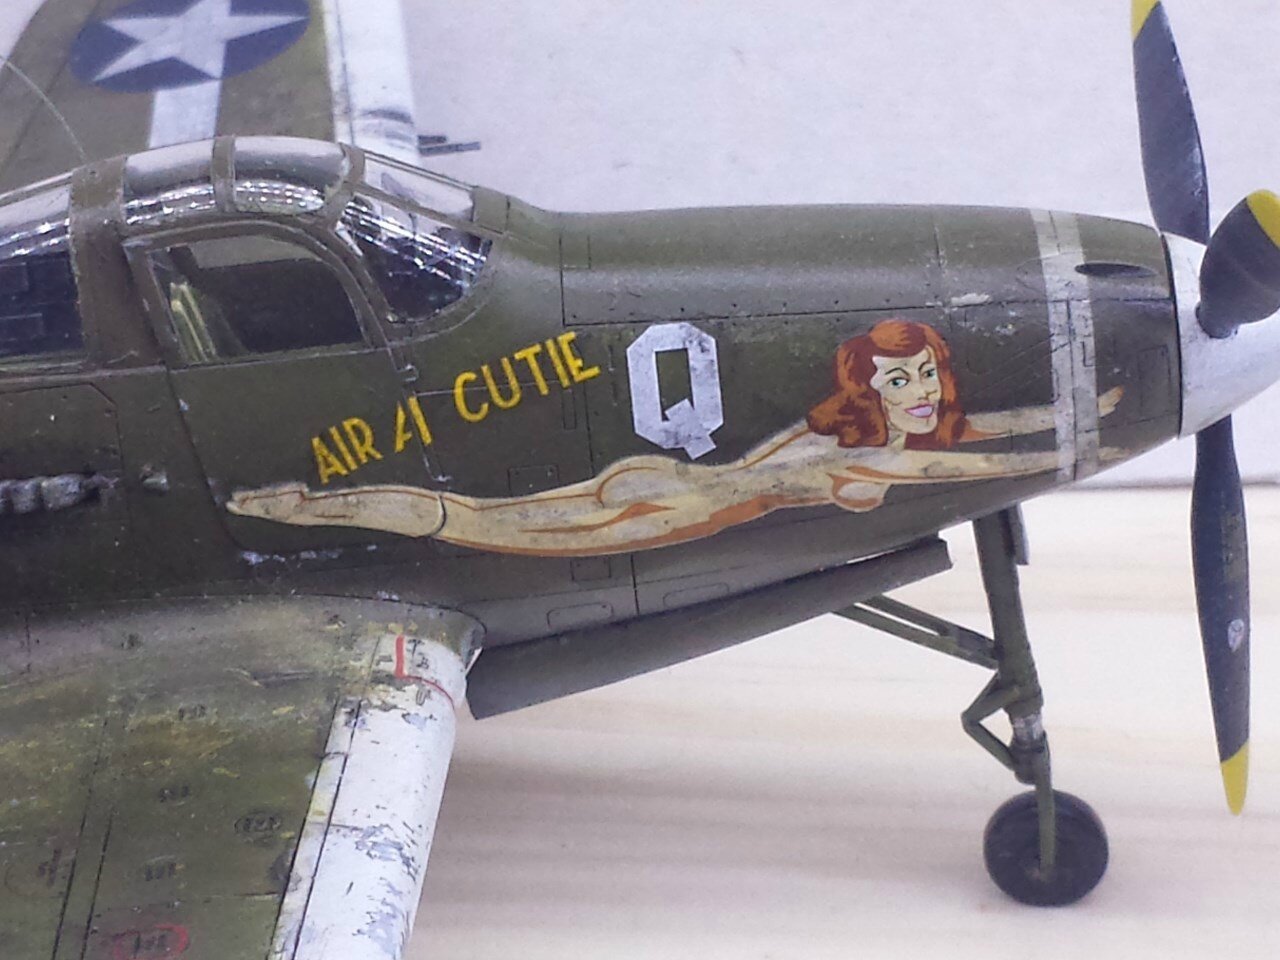 P-400 / P-39 Air a cutie Eduard 1/48 109653739_o